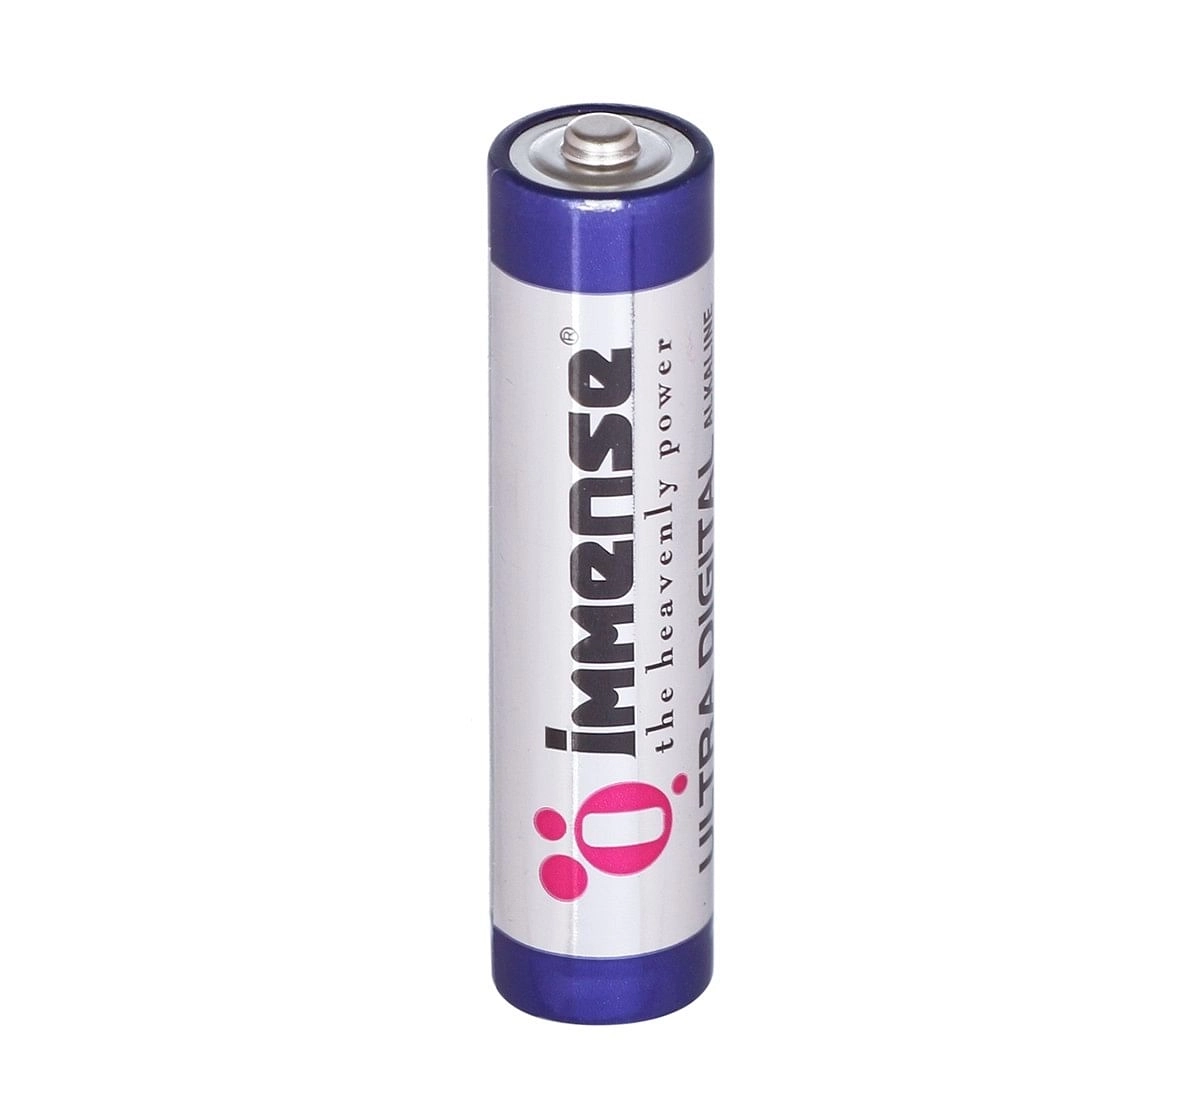 Immense AAA Ultra Digital Alkaline battery Pack of 4, 3Y+